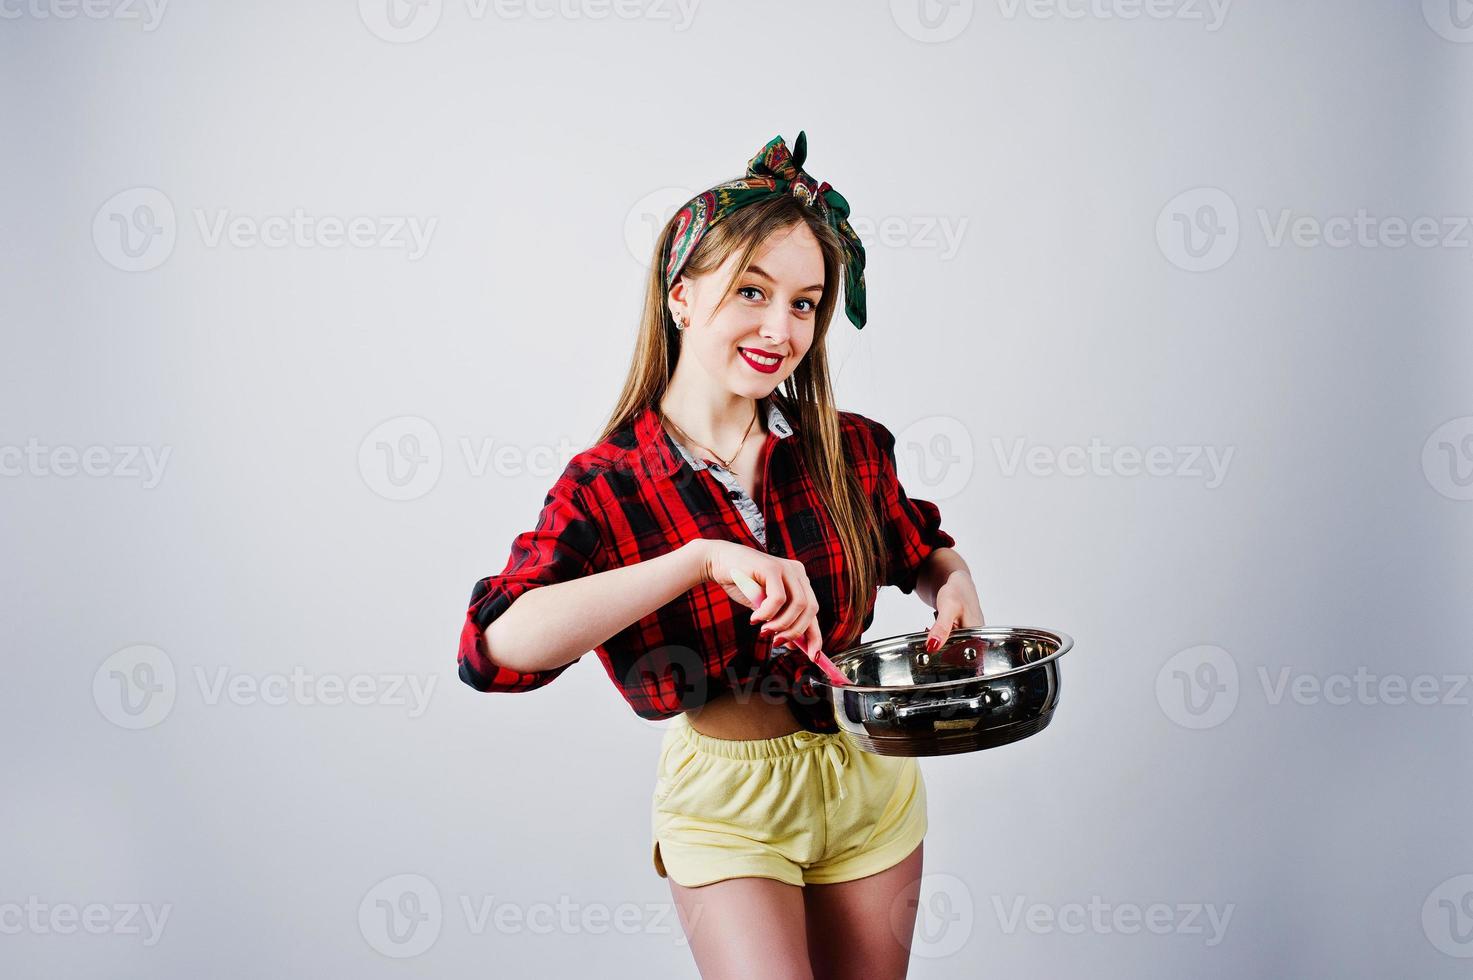 giovane casalinga divertente in camicia a scacchi e pantaloncini gialli pin up style con padella isolata su sfondo bianco. foto